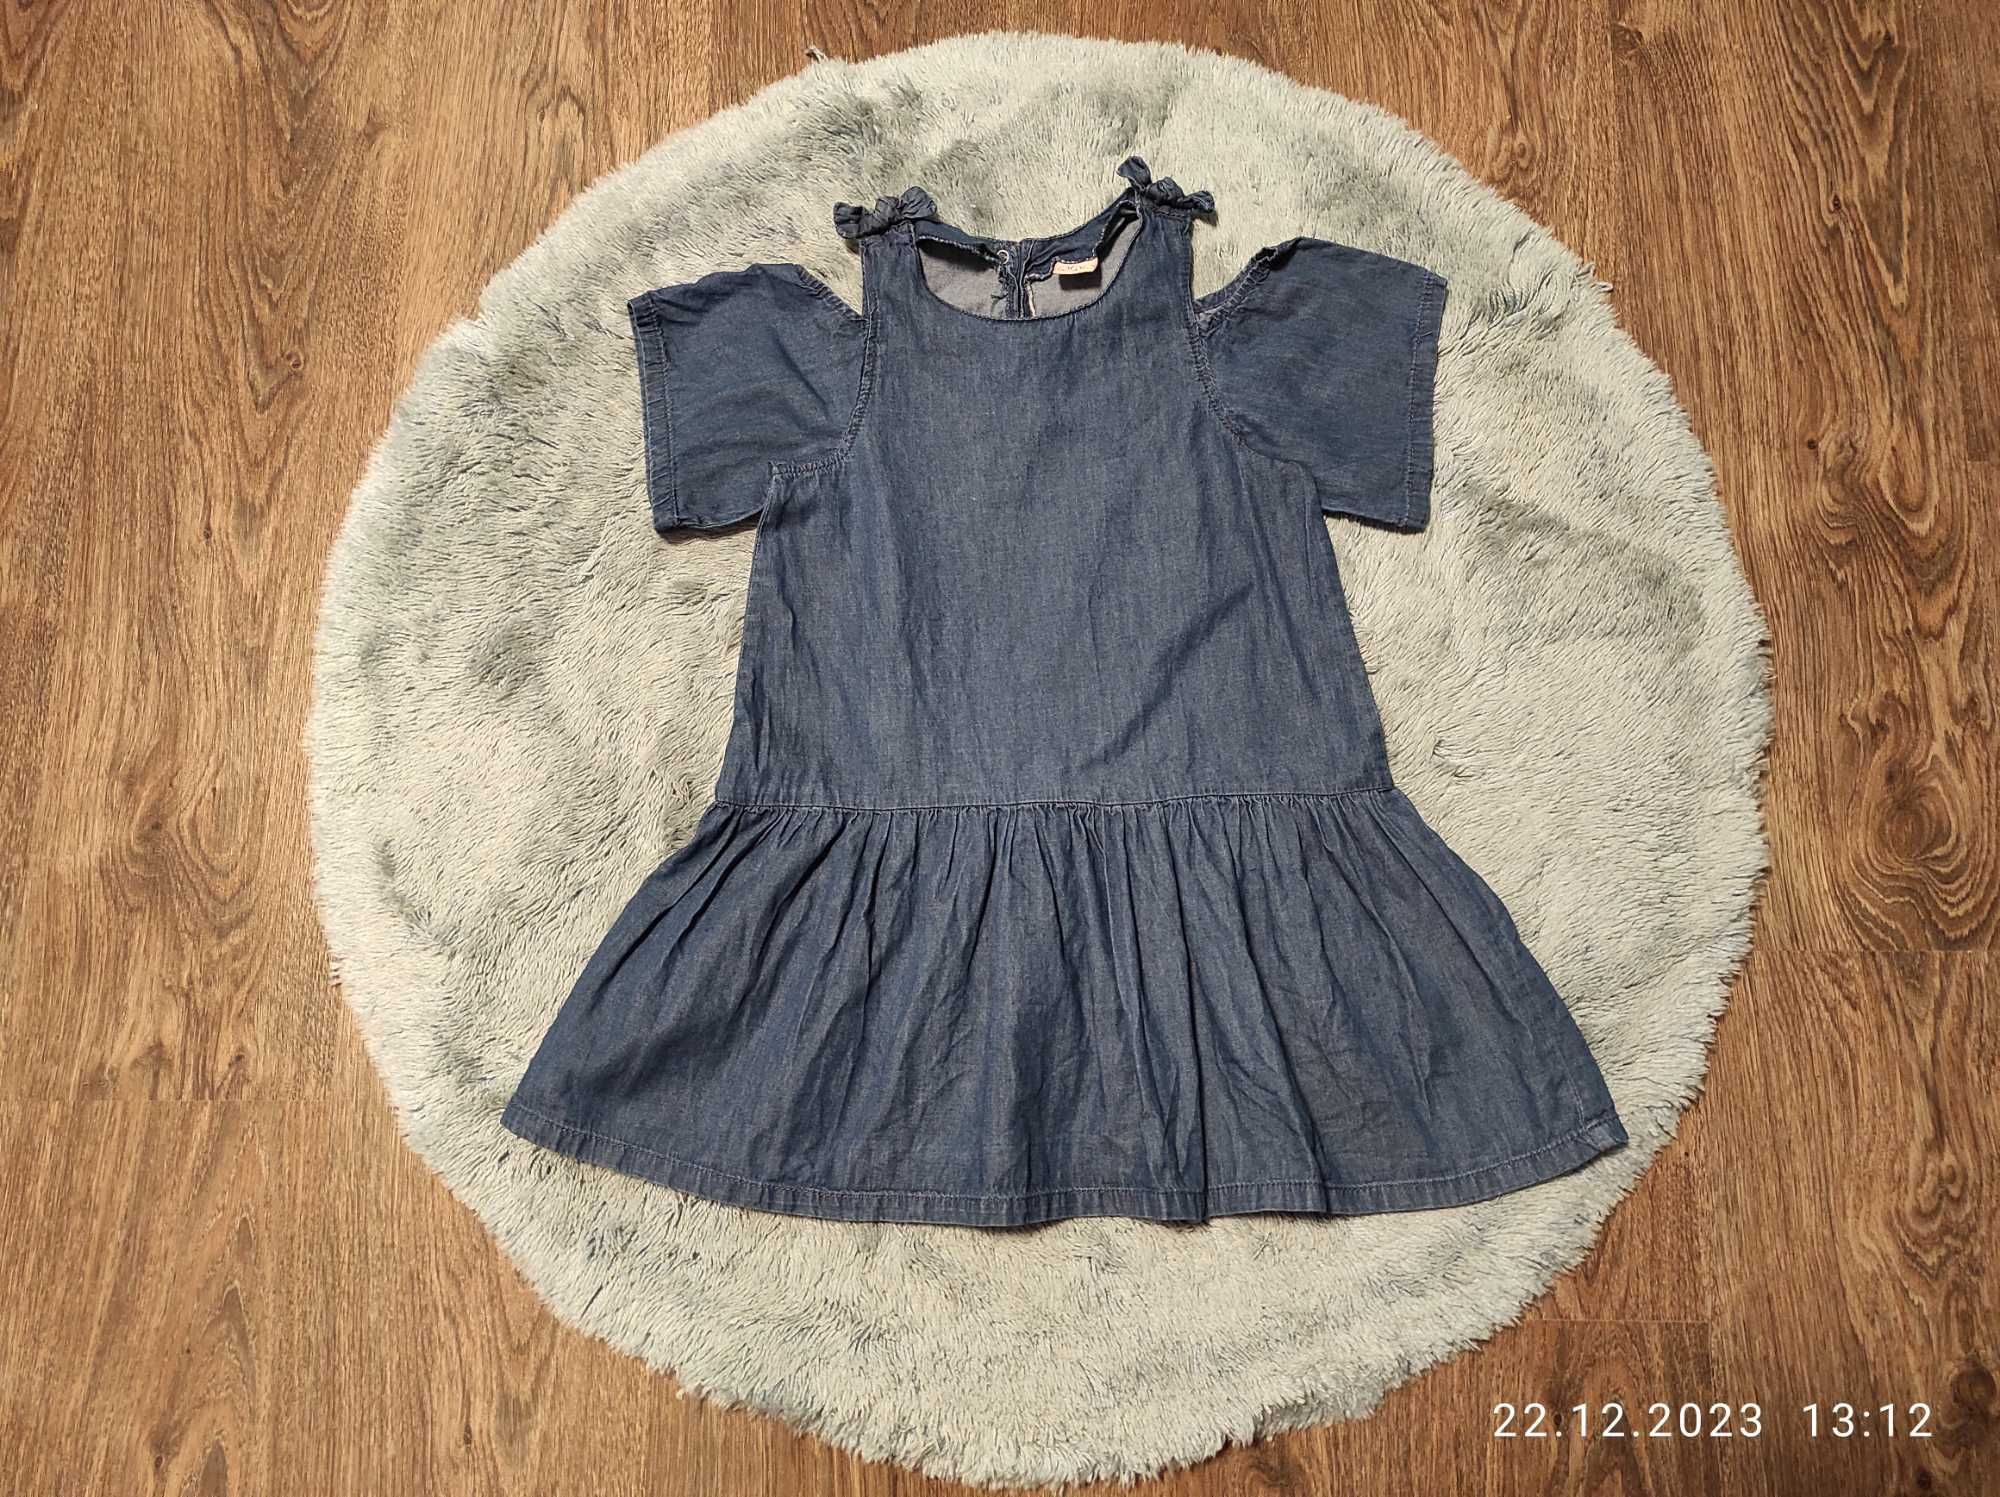 Фірмова,джинсова сукня,туніка,плаття для дівчинки 6-7 р.-Kiki&koko